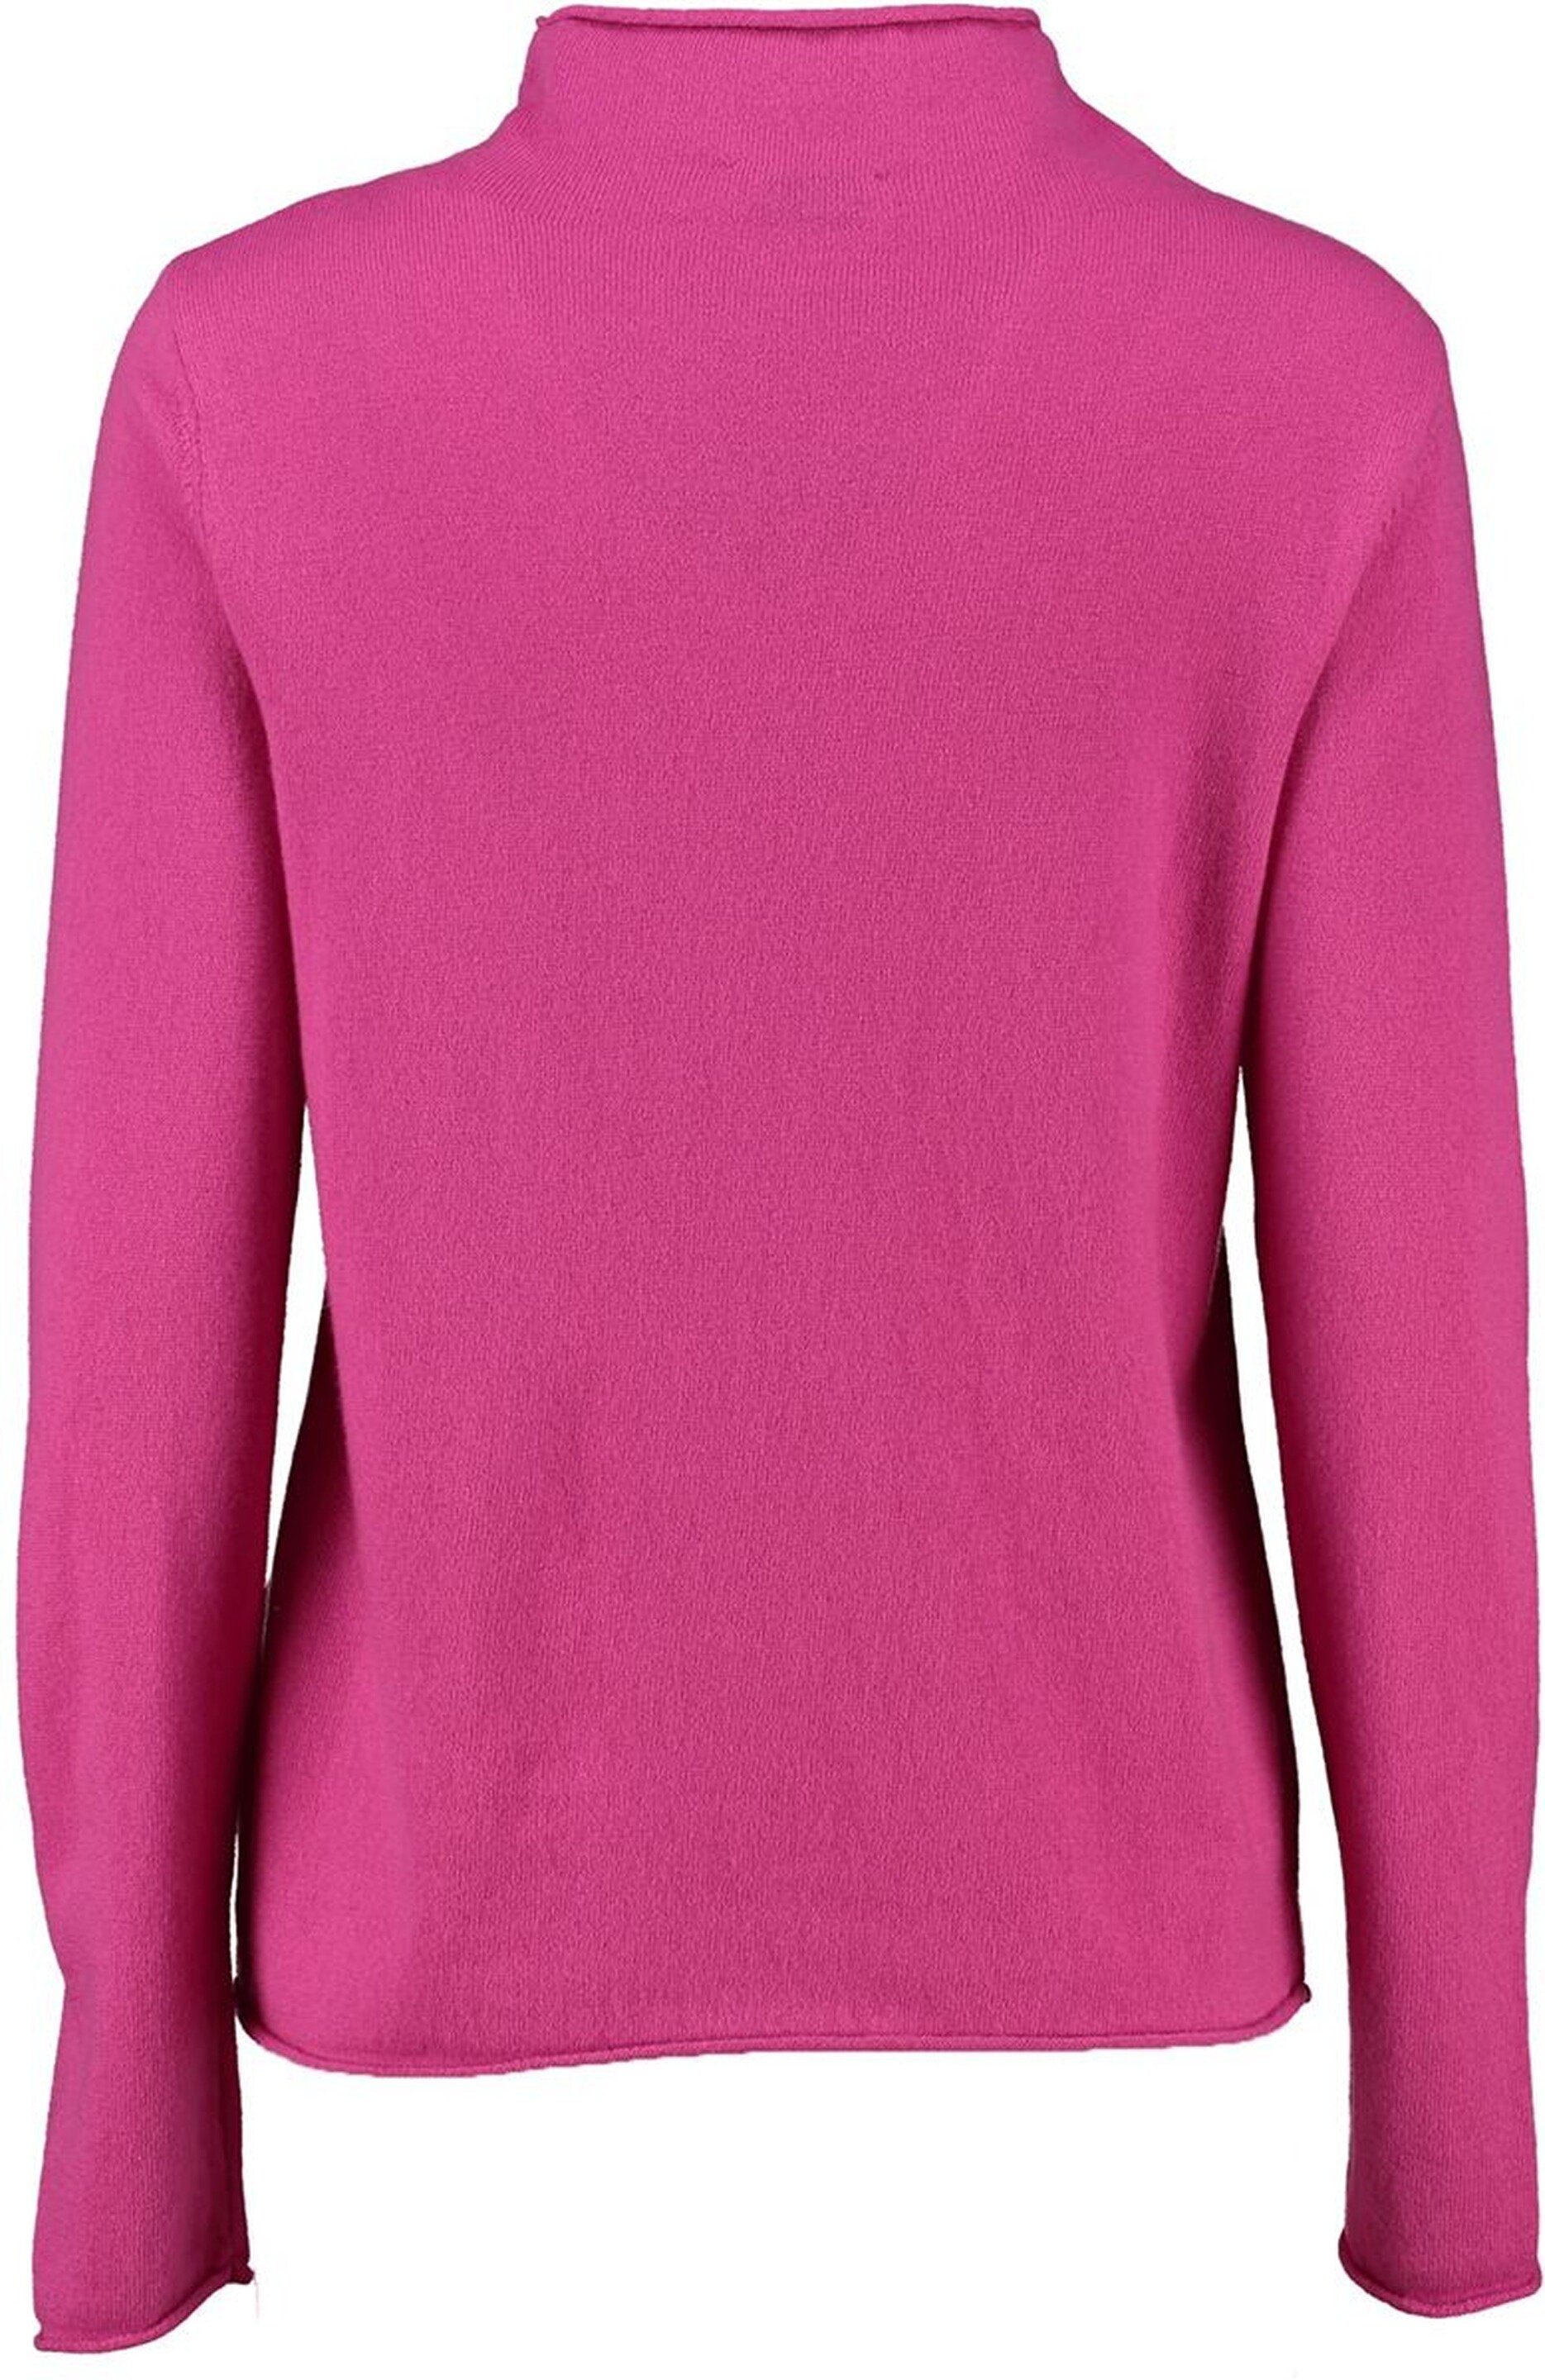 MAERZ Muenchen MAERZ Merinowolle pink weicher Stehkragen-Pullover super Stehkragenpullover in